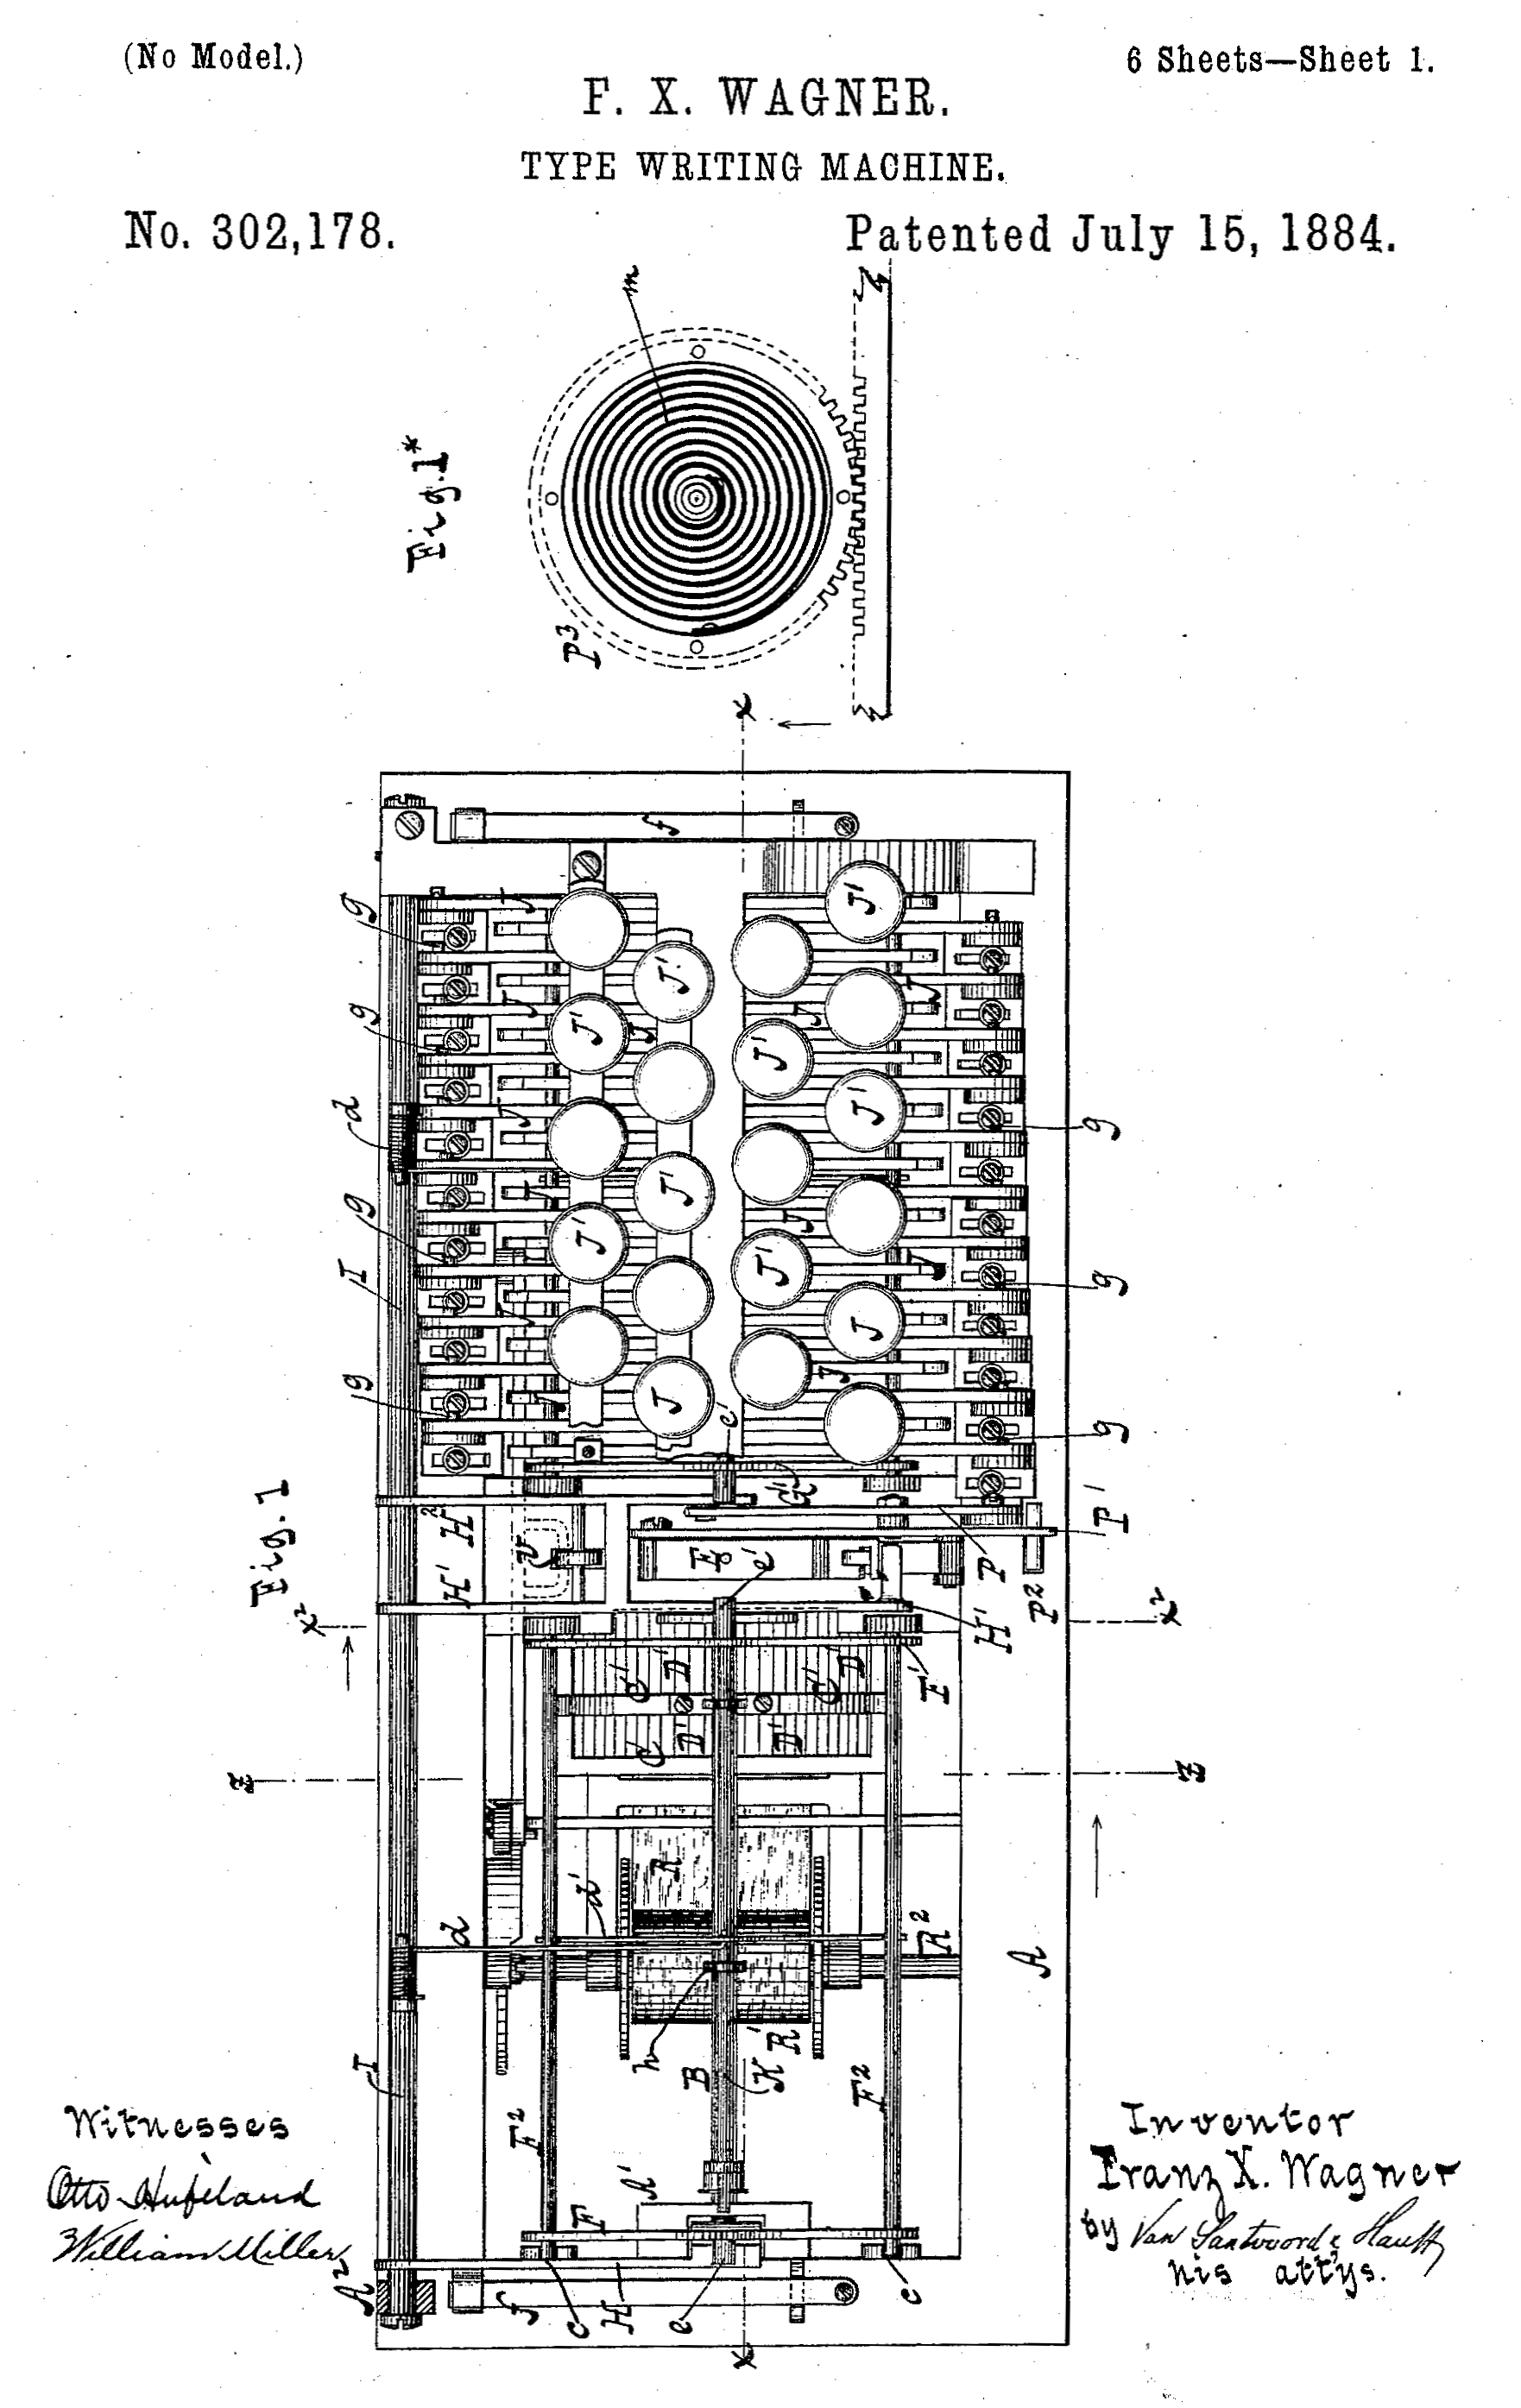 ワーグナーが設計した吊下型タイプシャトル式タイプライター（U.S. Patent No. 302178）